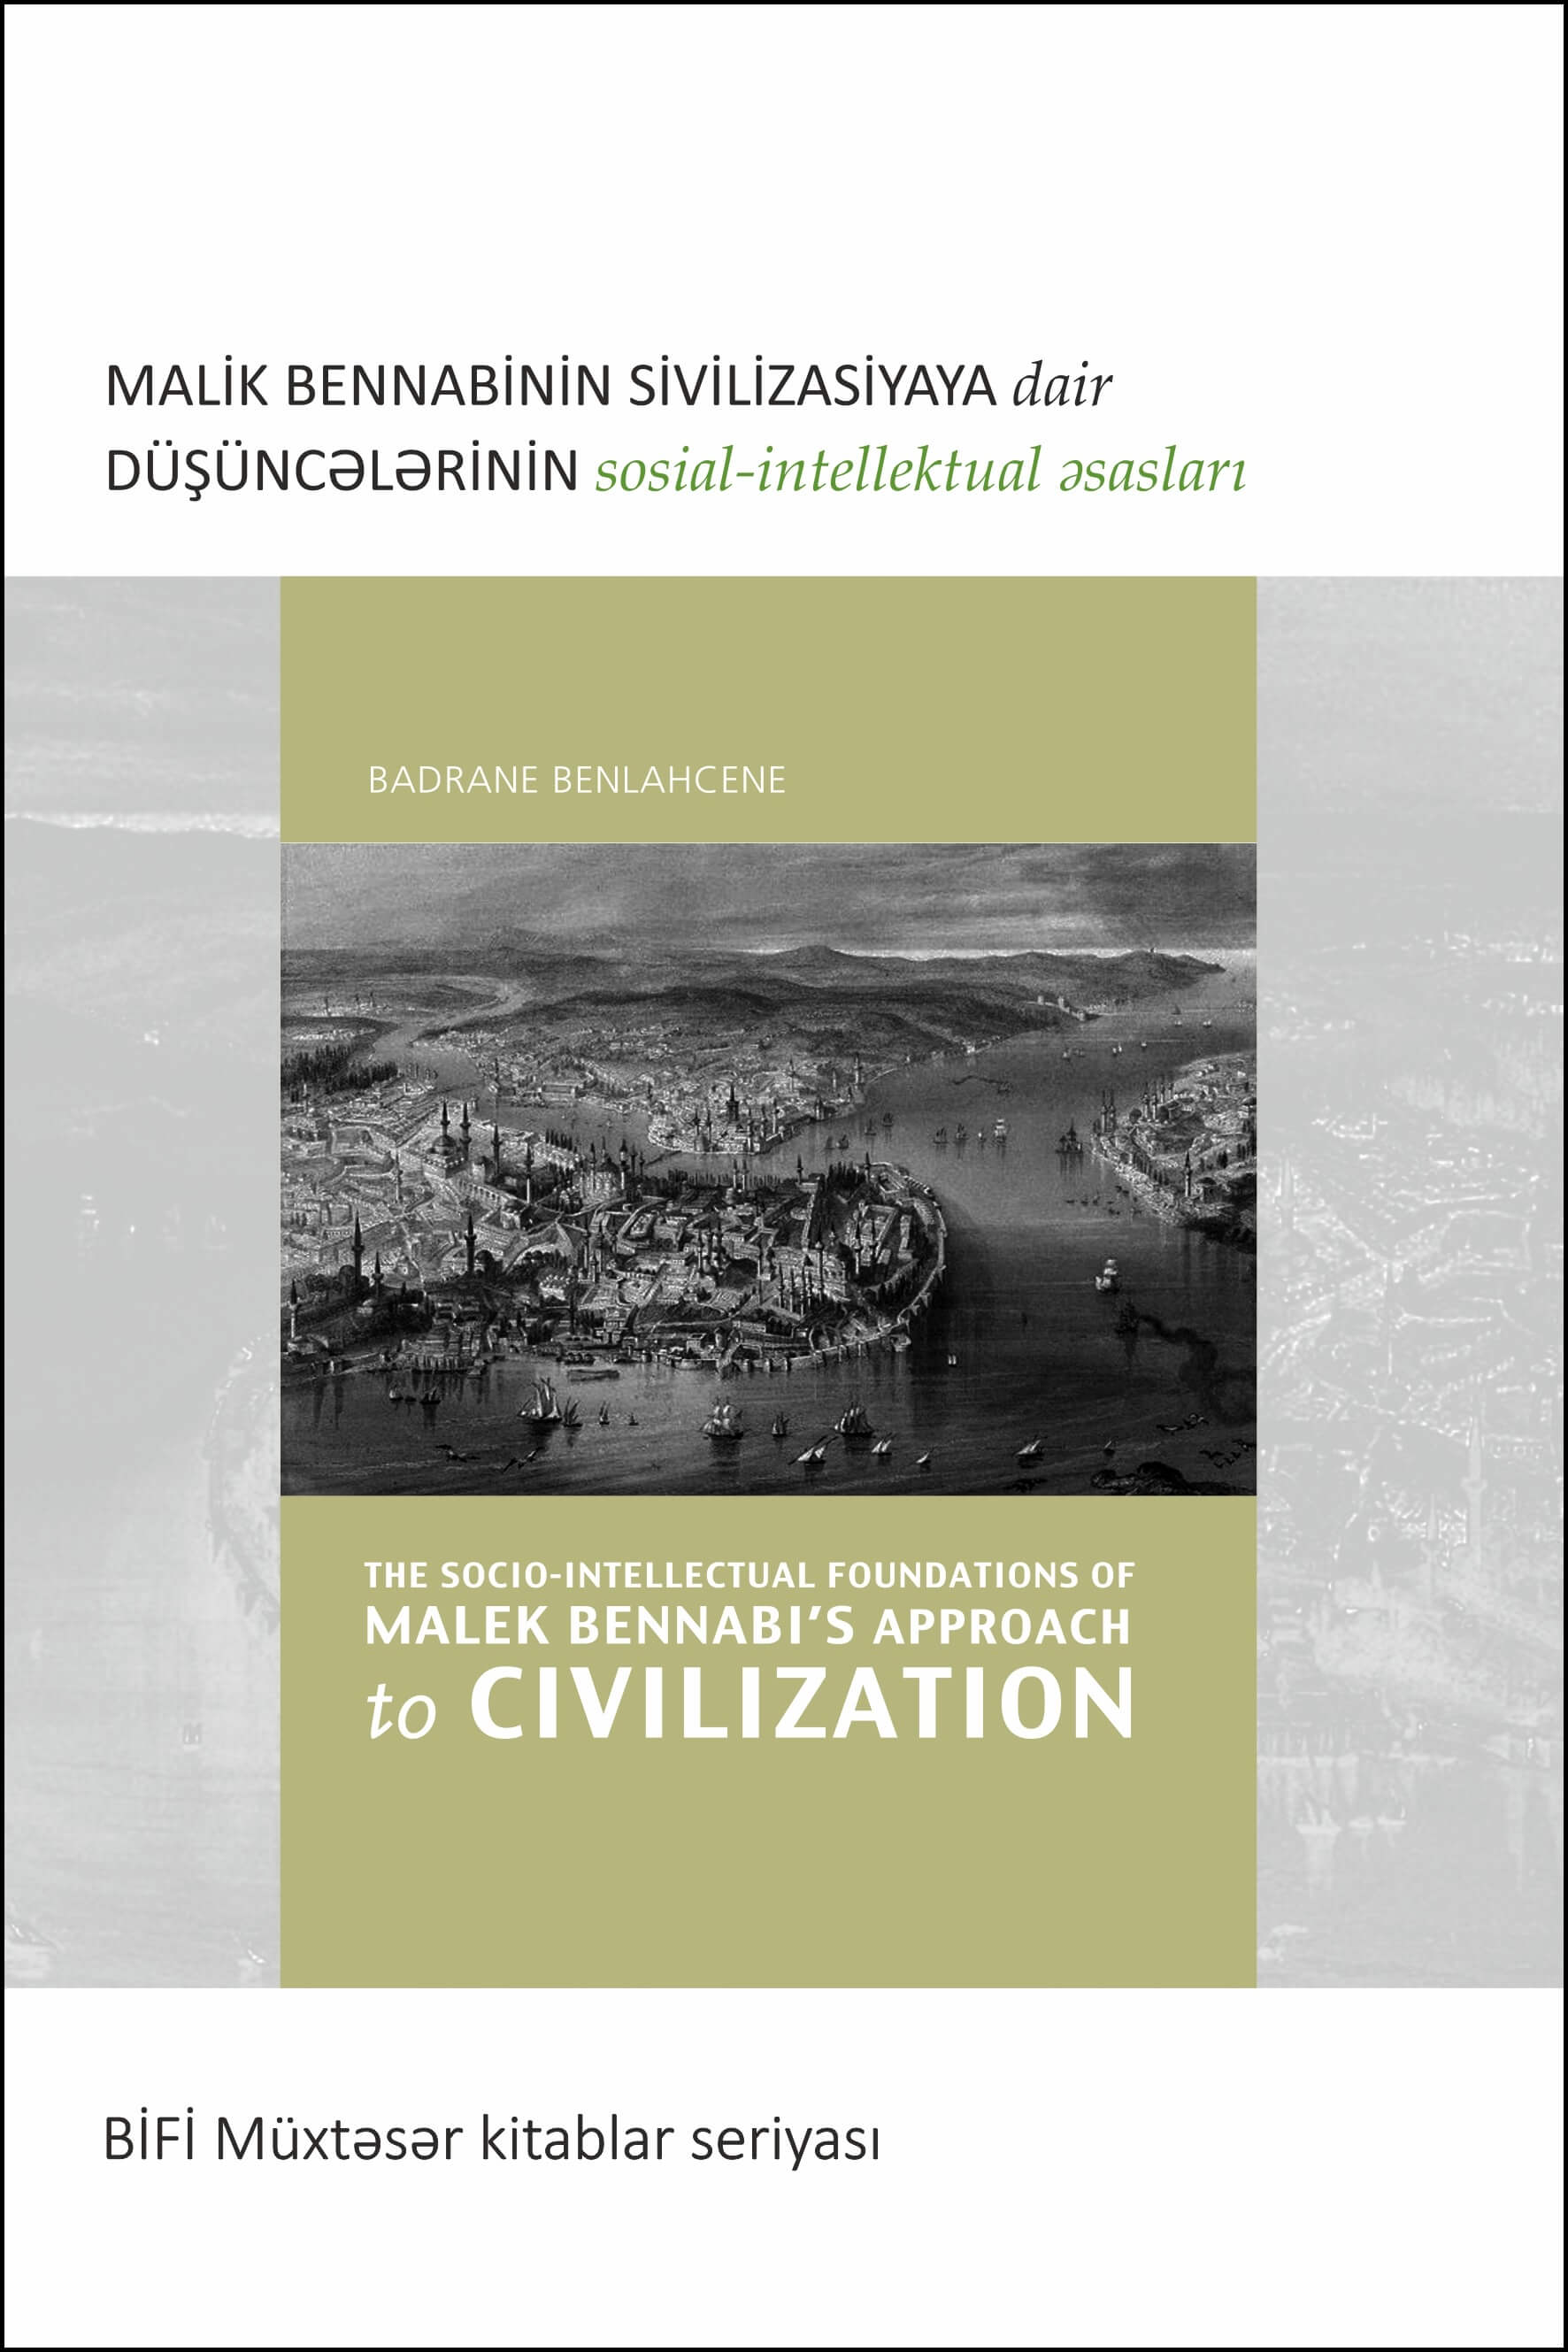 Azeri: BİFİ-nin yığcam nəşrlər silsiləsi: Соціально-інтелектуальні основи підходу Малека Беннабі до цивілізації (Book in Breif – The Socio-Intellectual Foundations of Malek Bennabi’s Approach to Civilization)